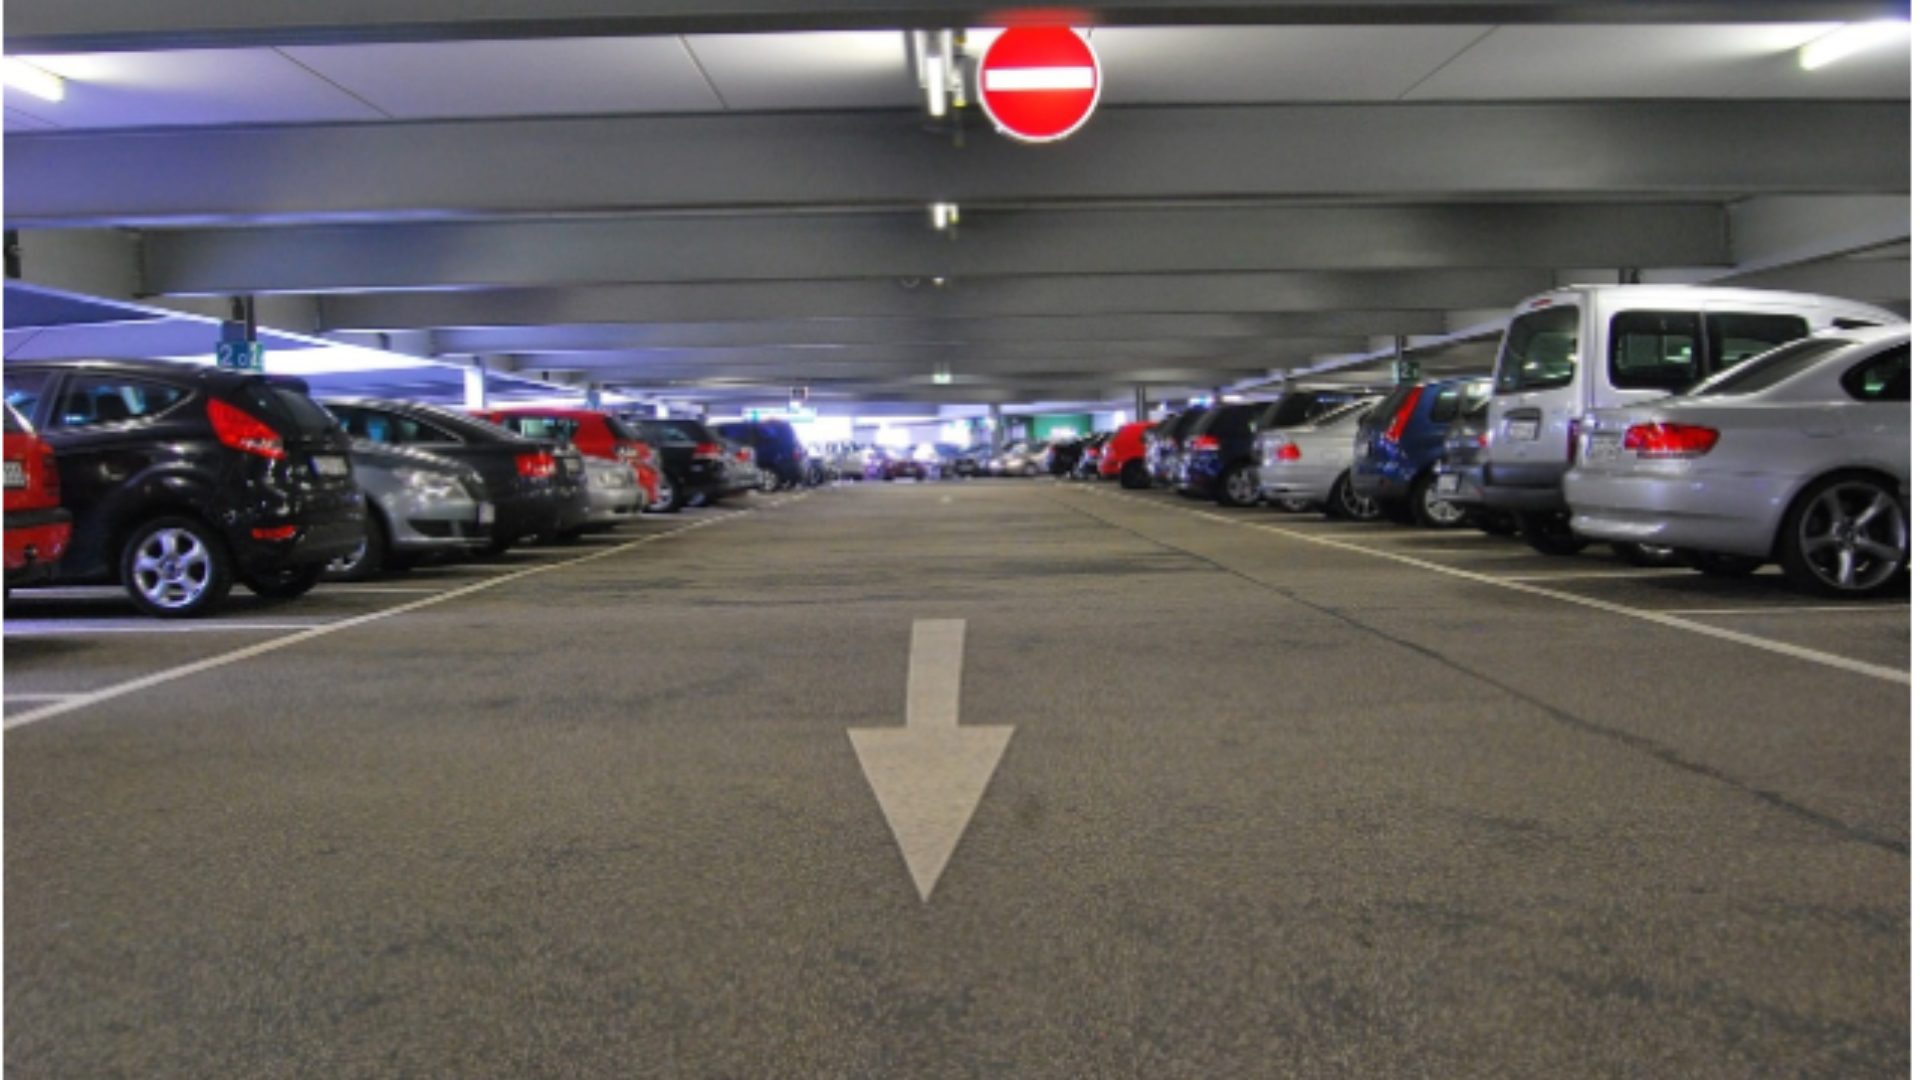 Ο σωστός τρόπος για να παρκάρεις το όχημά σου σε μία κάθετη θέση στάθμευσης!